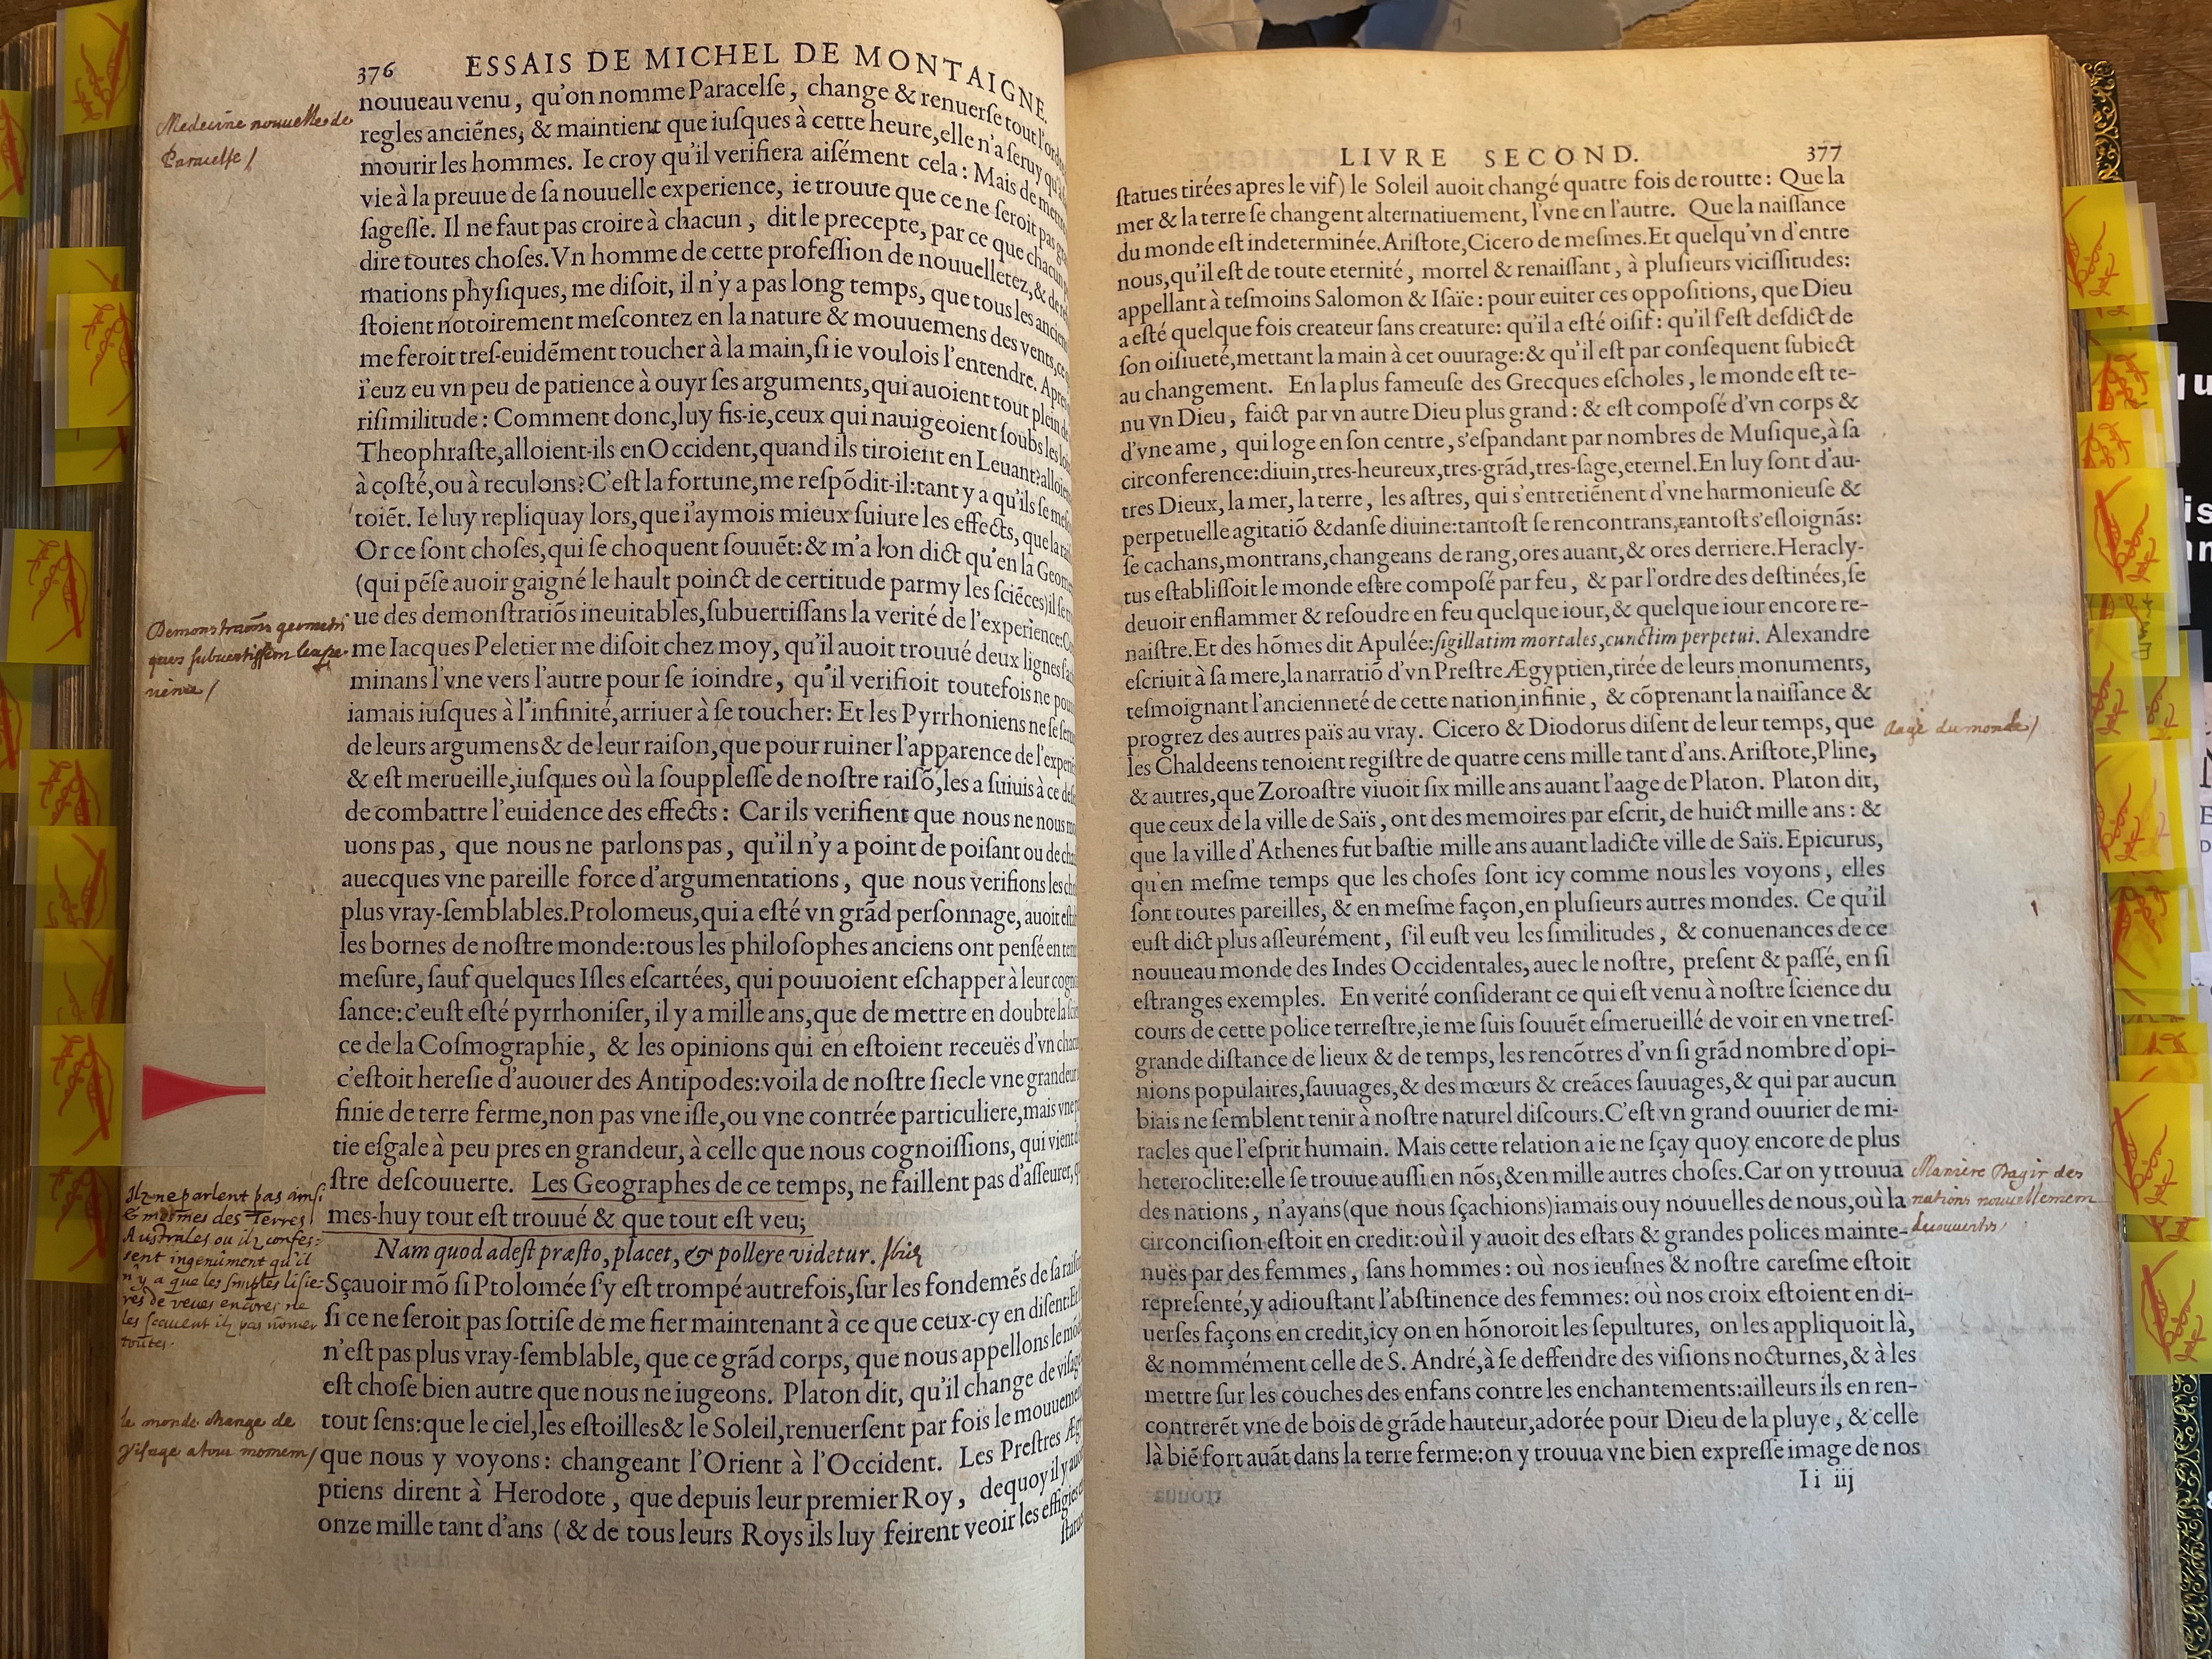 12. - p. 376-377, Livre II. Les Essais, 1595. Exemplaire Laval.